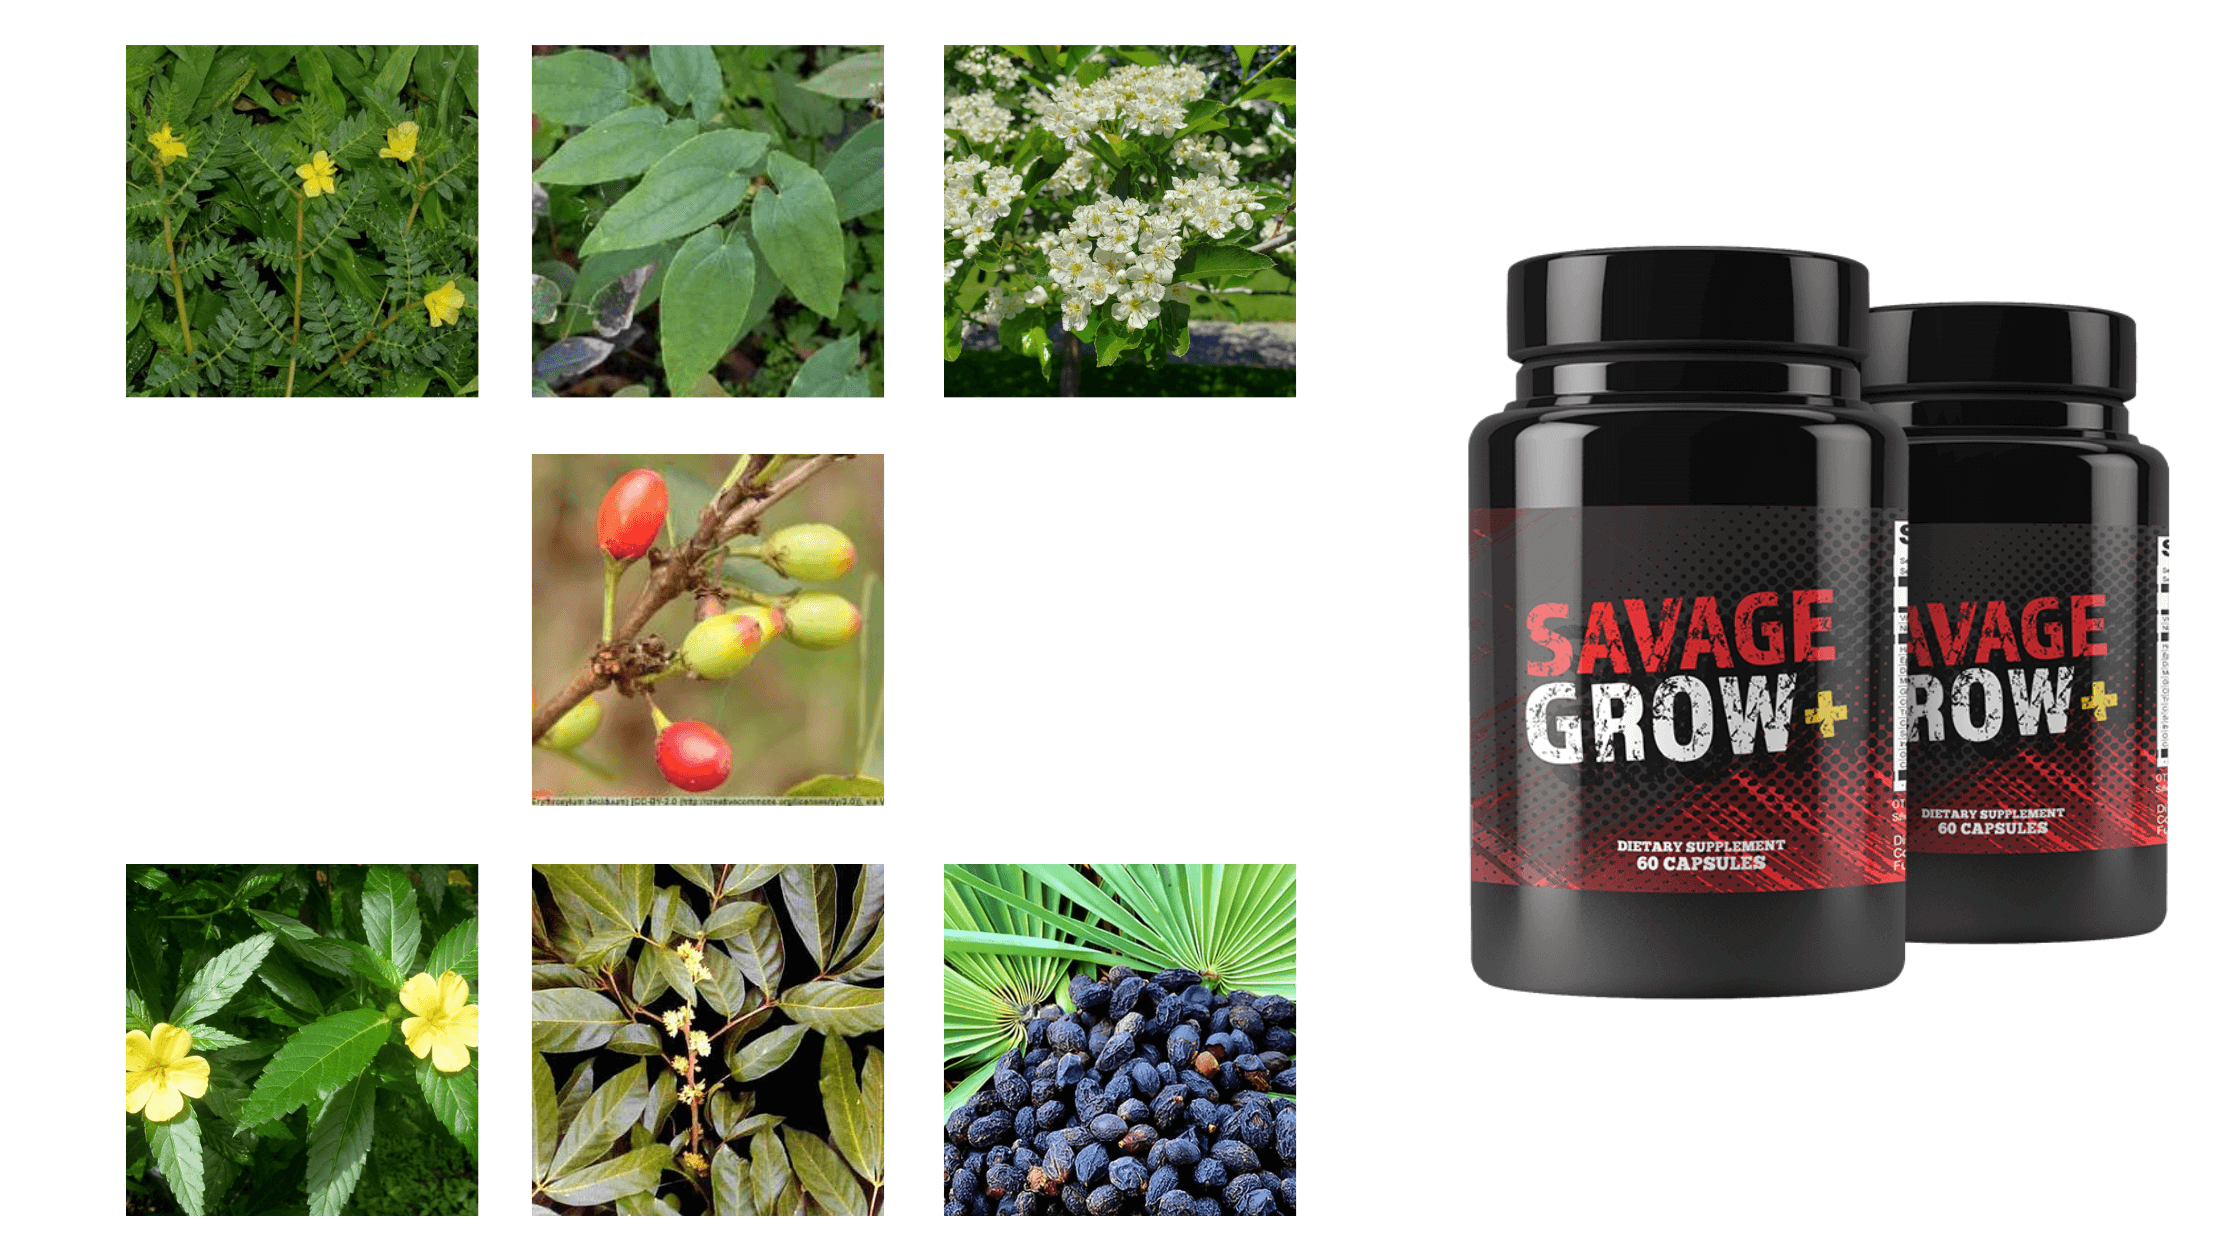 Savage Grow Plus Ingredients